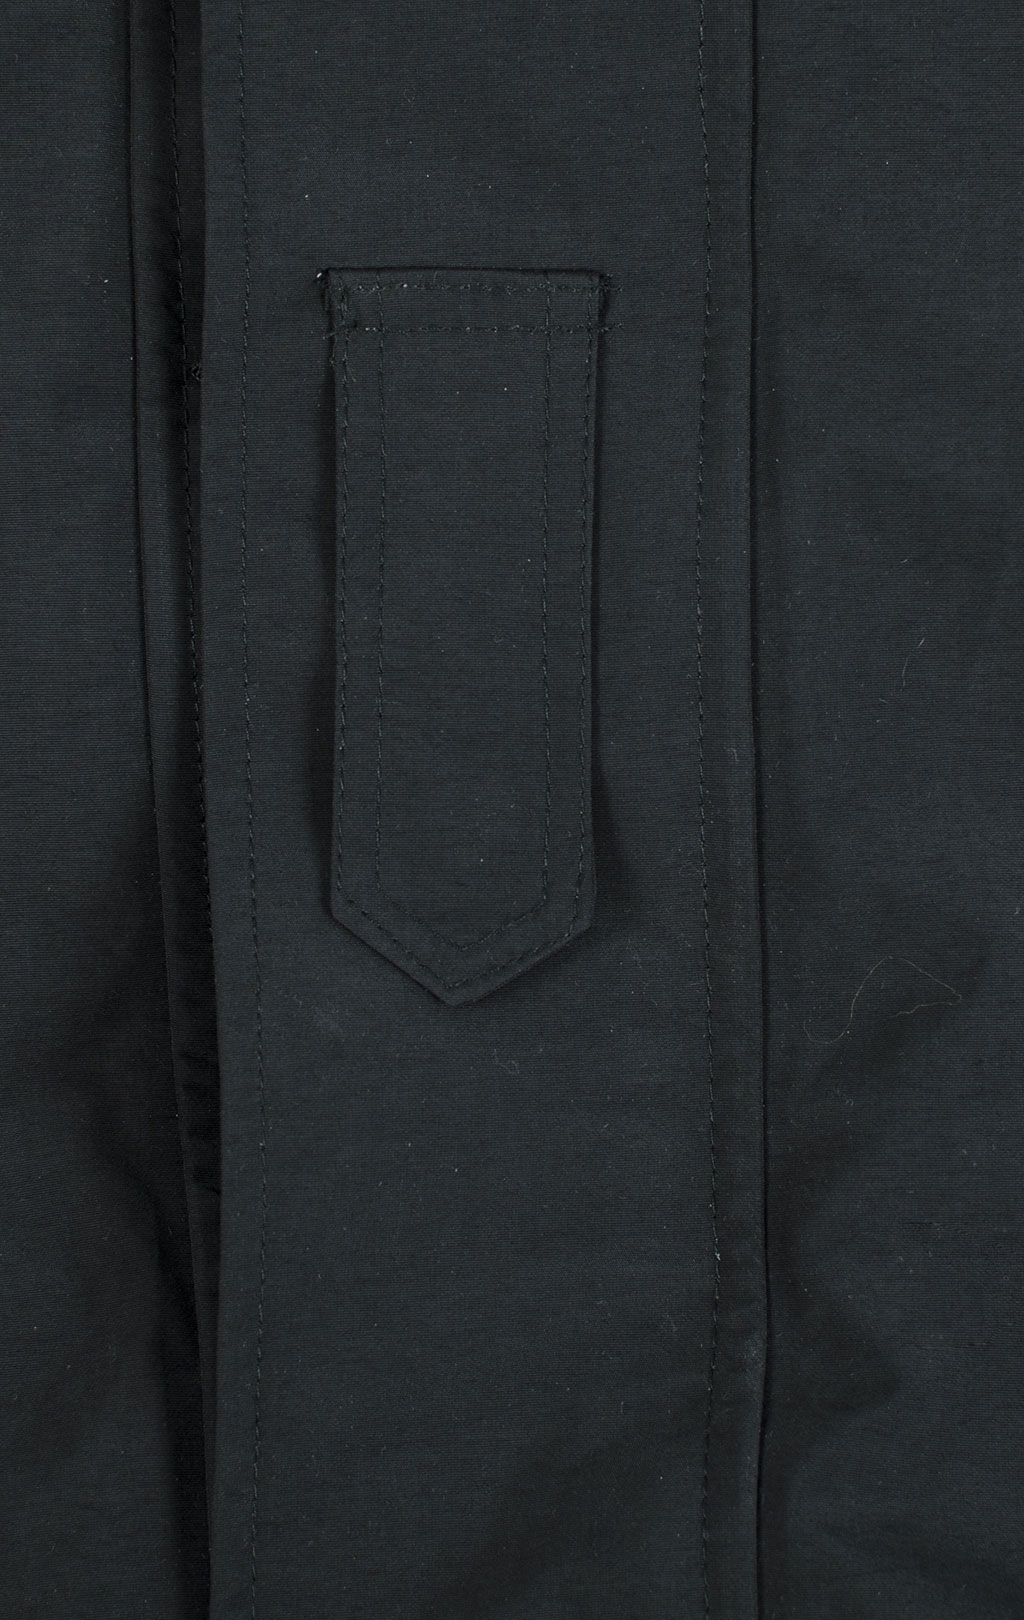 Куртка непромокаемая Tru-Spec/Guardian Spirit мембрана ecwcs с подстёжкой флис black 